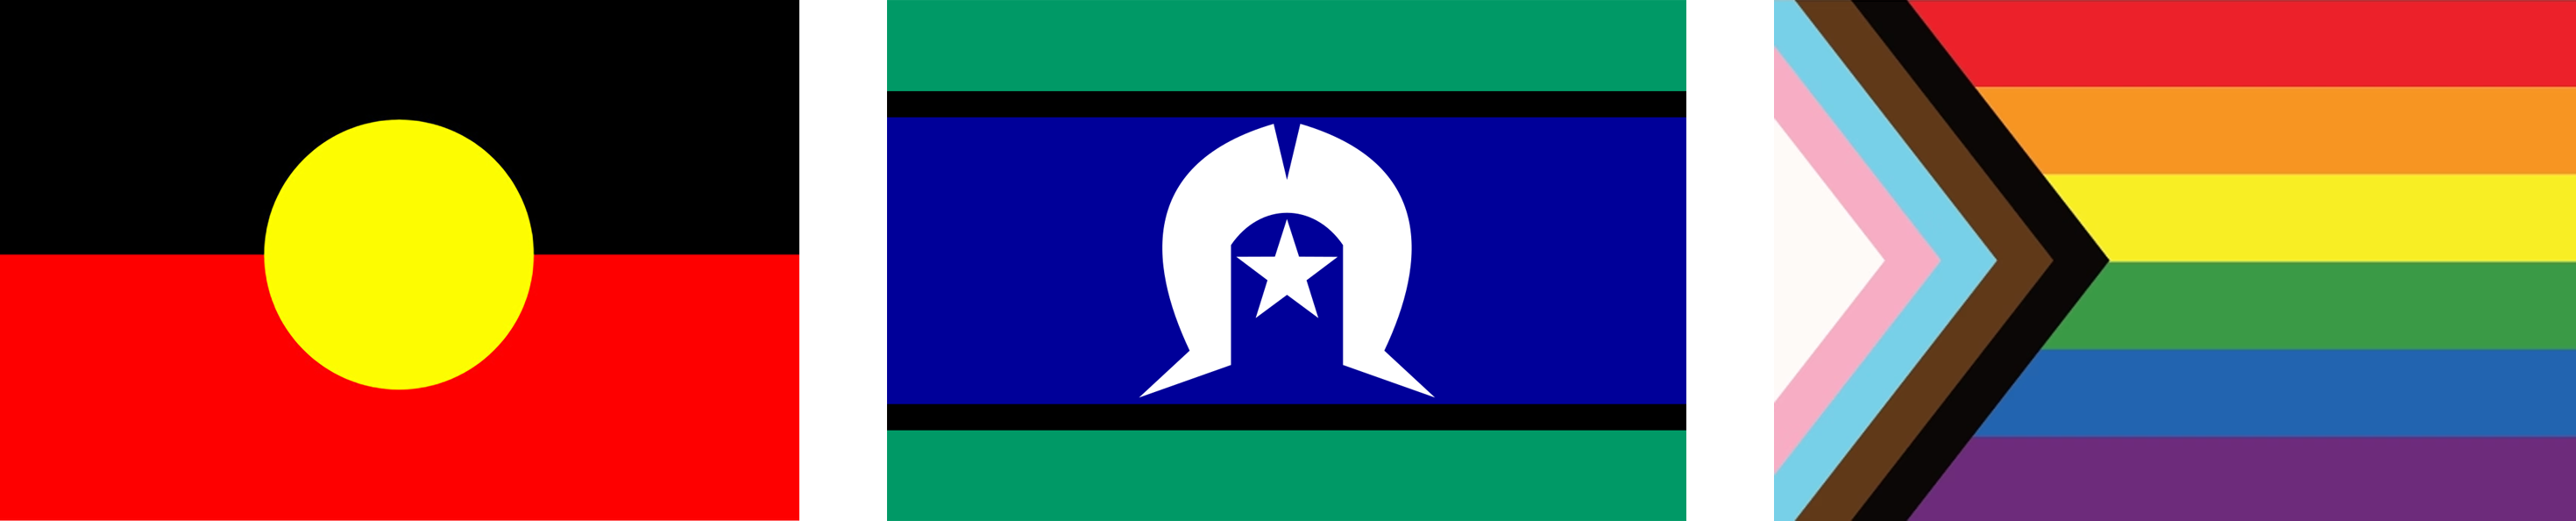 Aboriginal flag, Torres Strait Islander flag and Pride flag